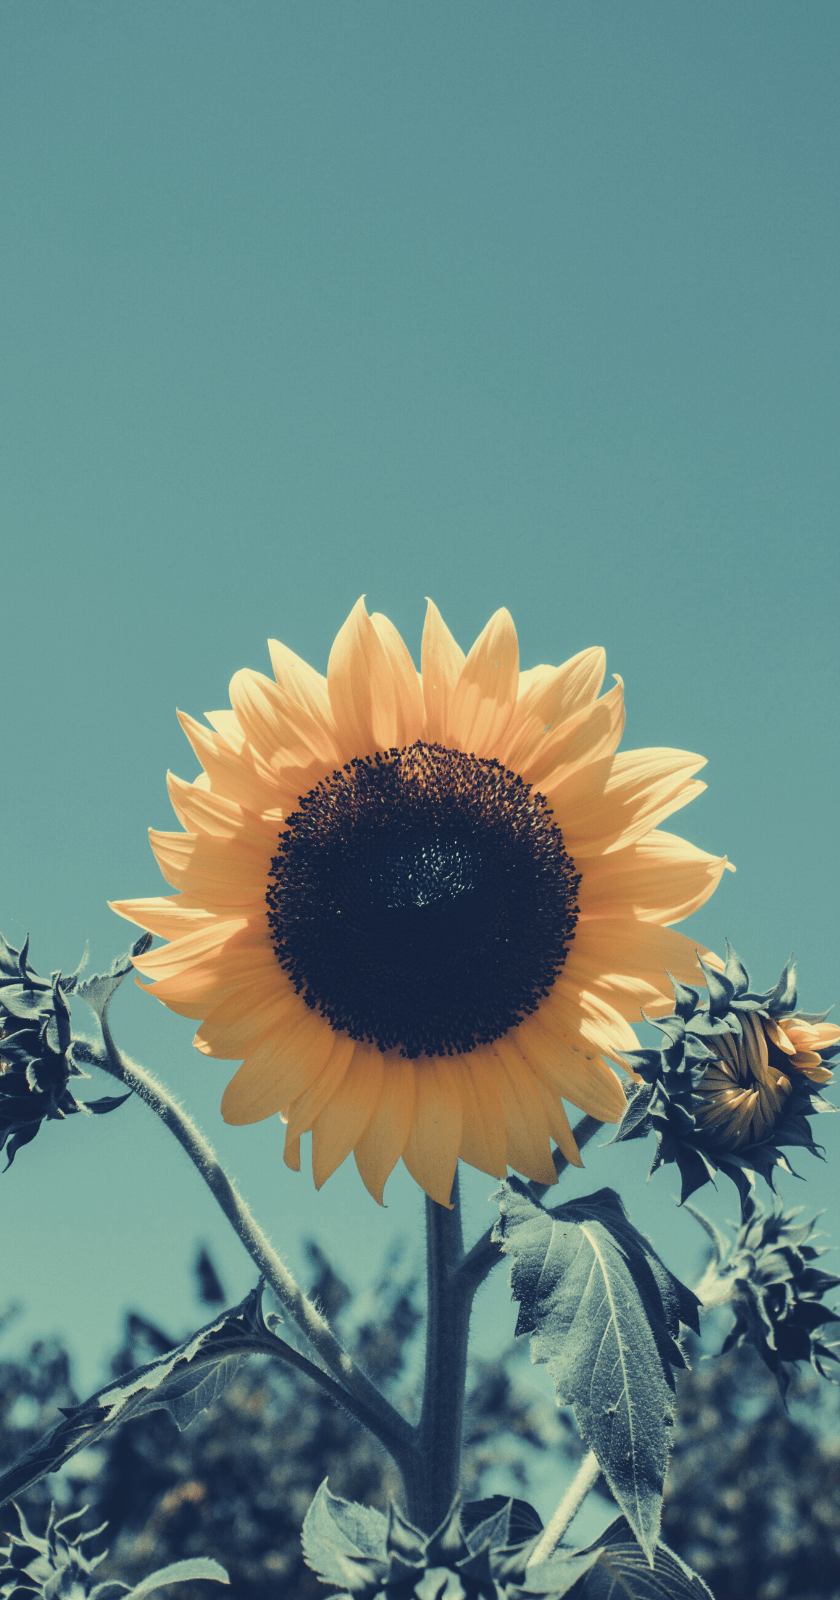 Hình nền 840x1600 cho iPhone.  hình nền hoa tốt nhất từ ​​tumblr.  Hình nền hoa hướng dương, Hình ảnh hoa hướng dương, Nền hoa hướng dương